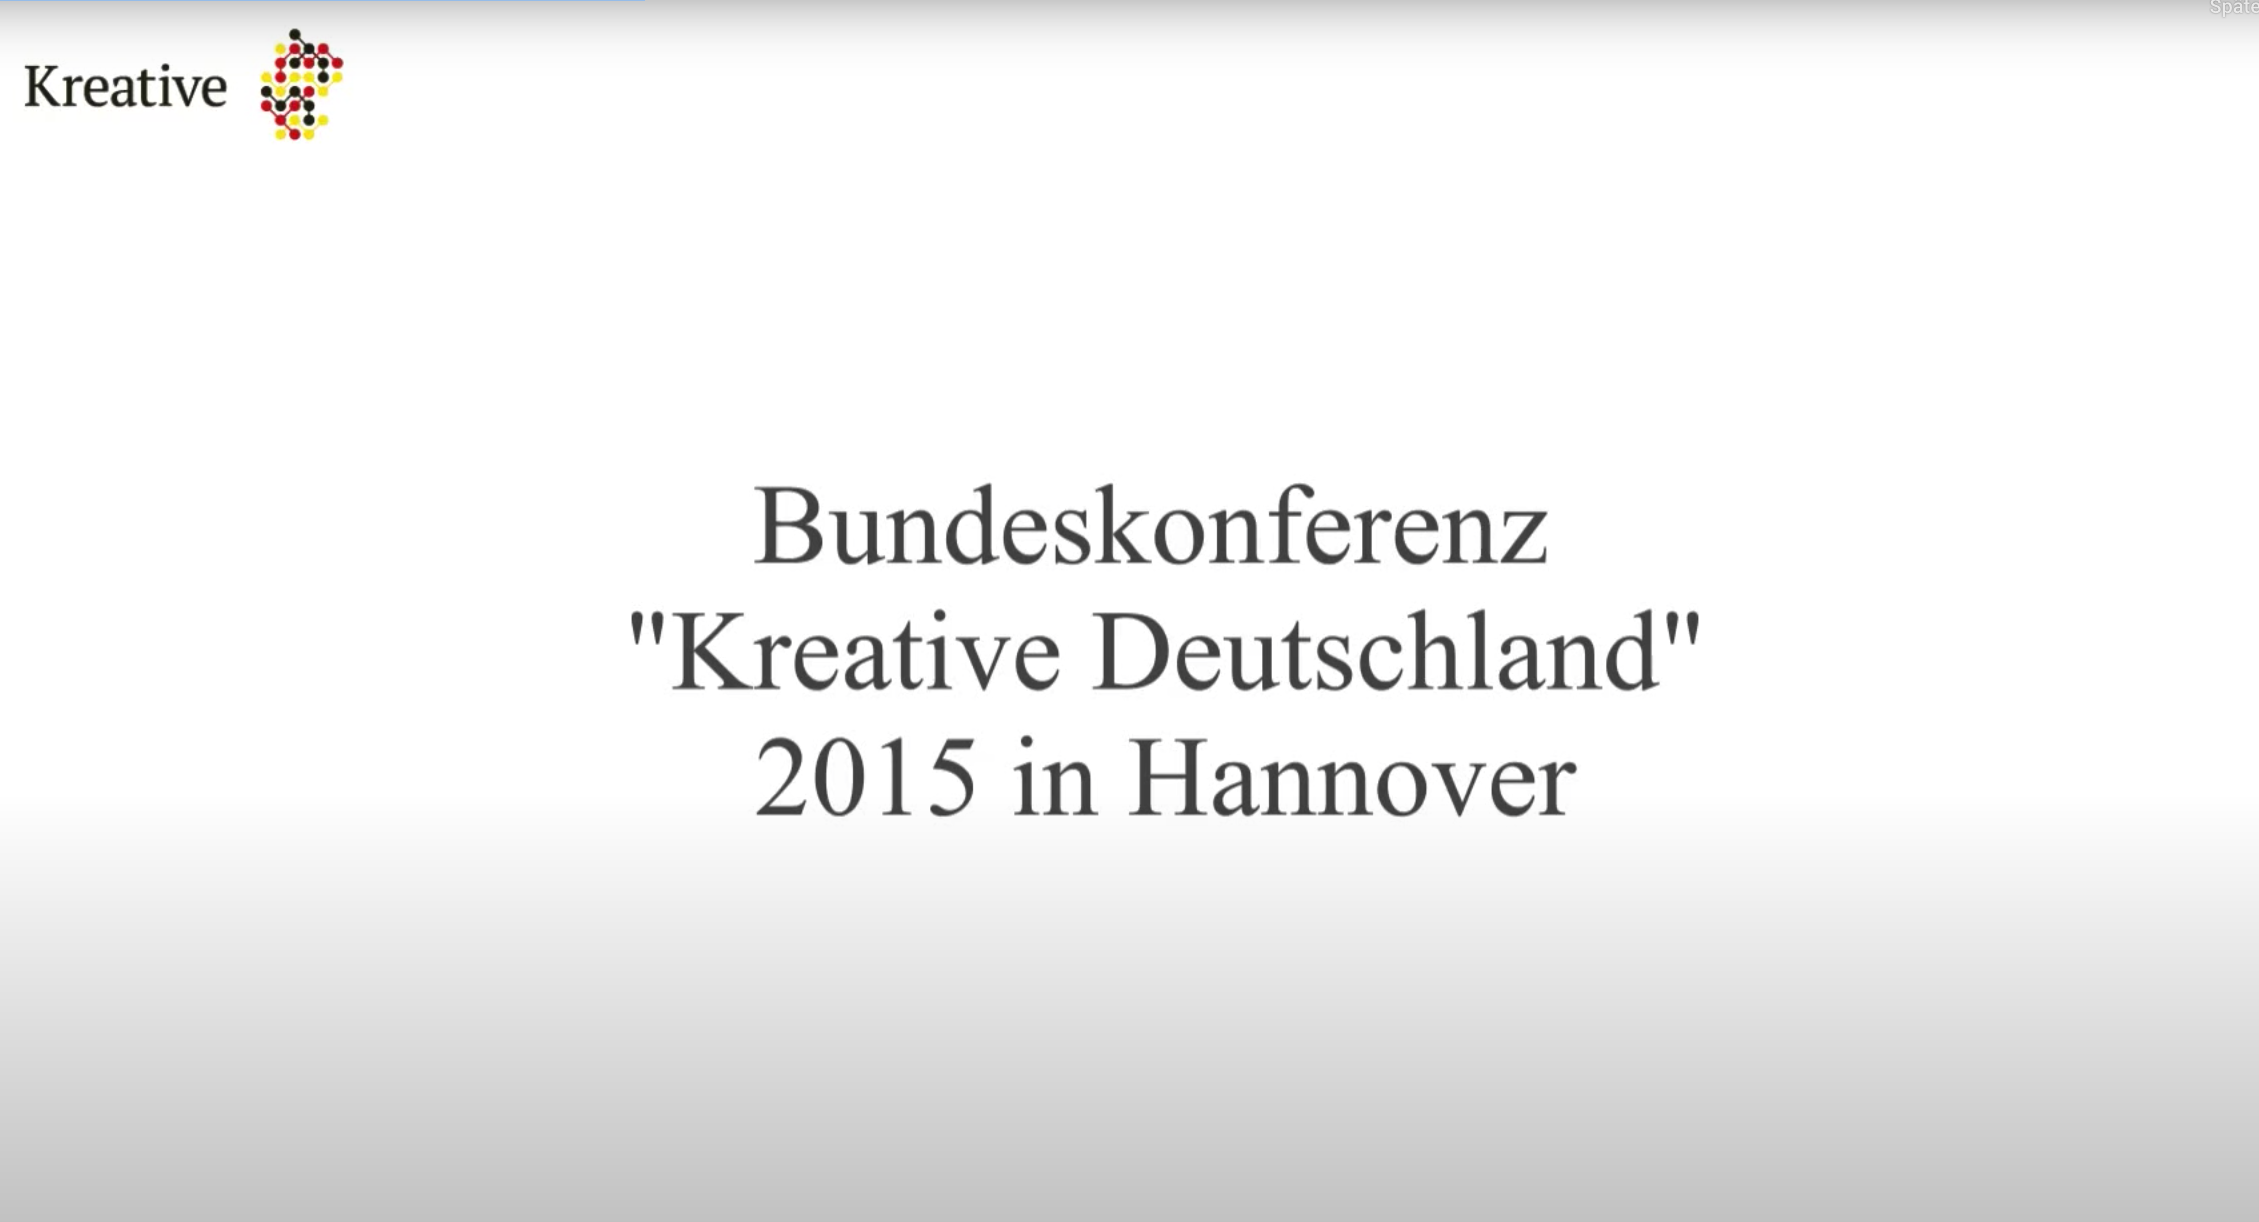 Bundeskonferenz Hannover 2015